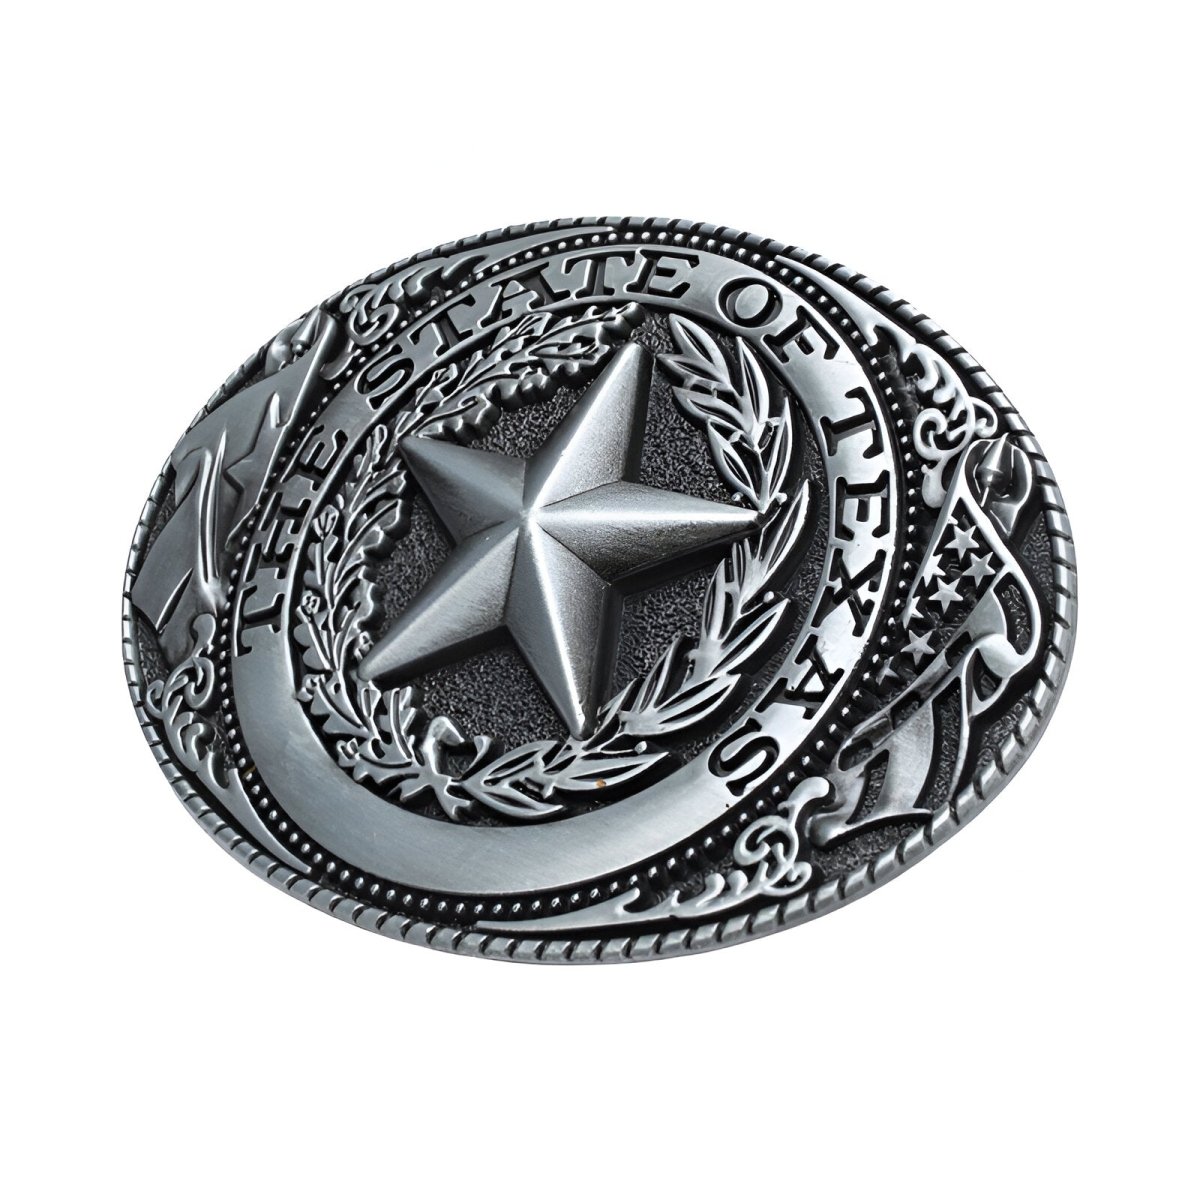 Boucle de ceinture Américaine, "The State of Texas", modèle Matthew - La Boutique de la Ceinture